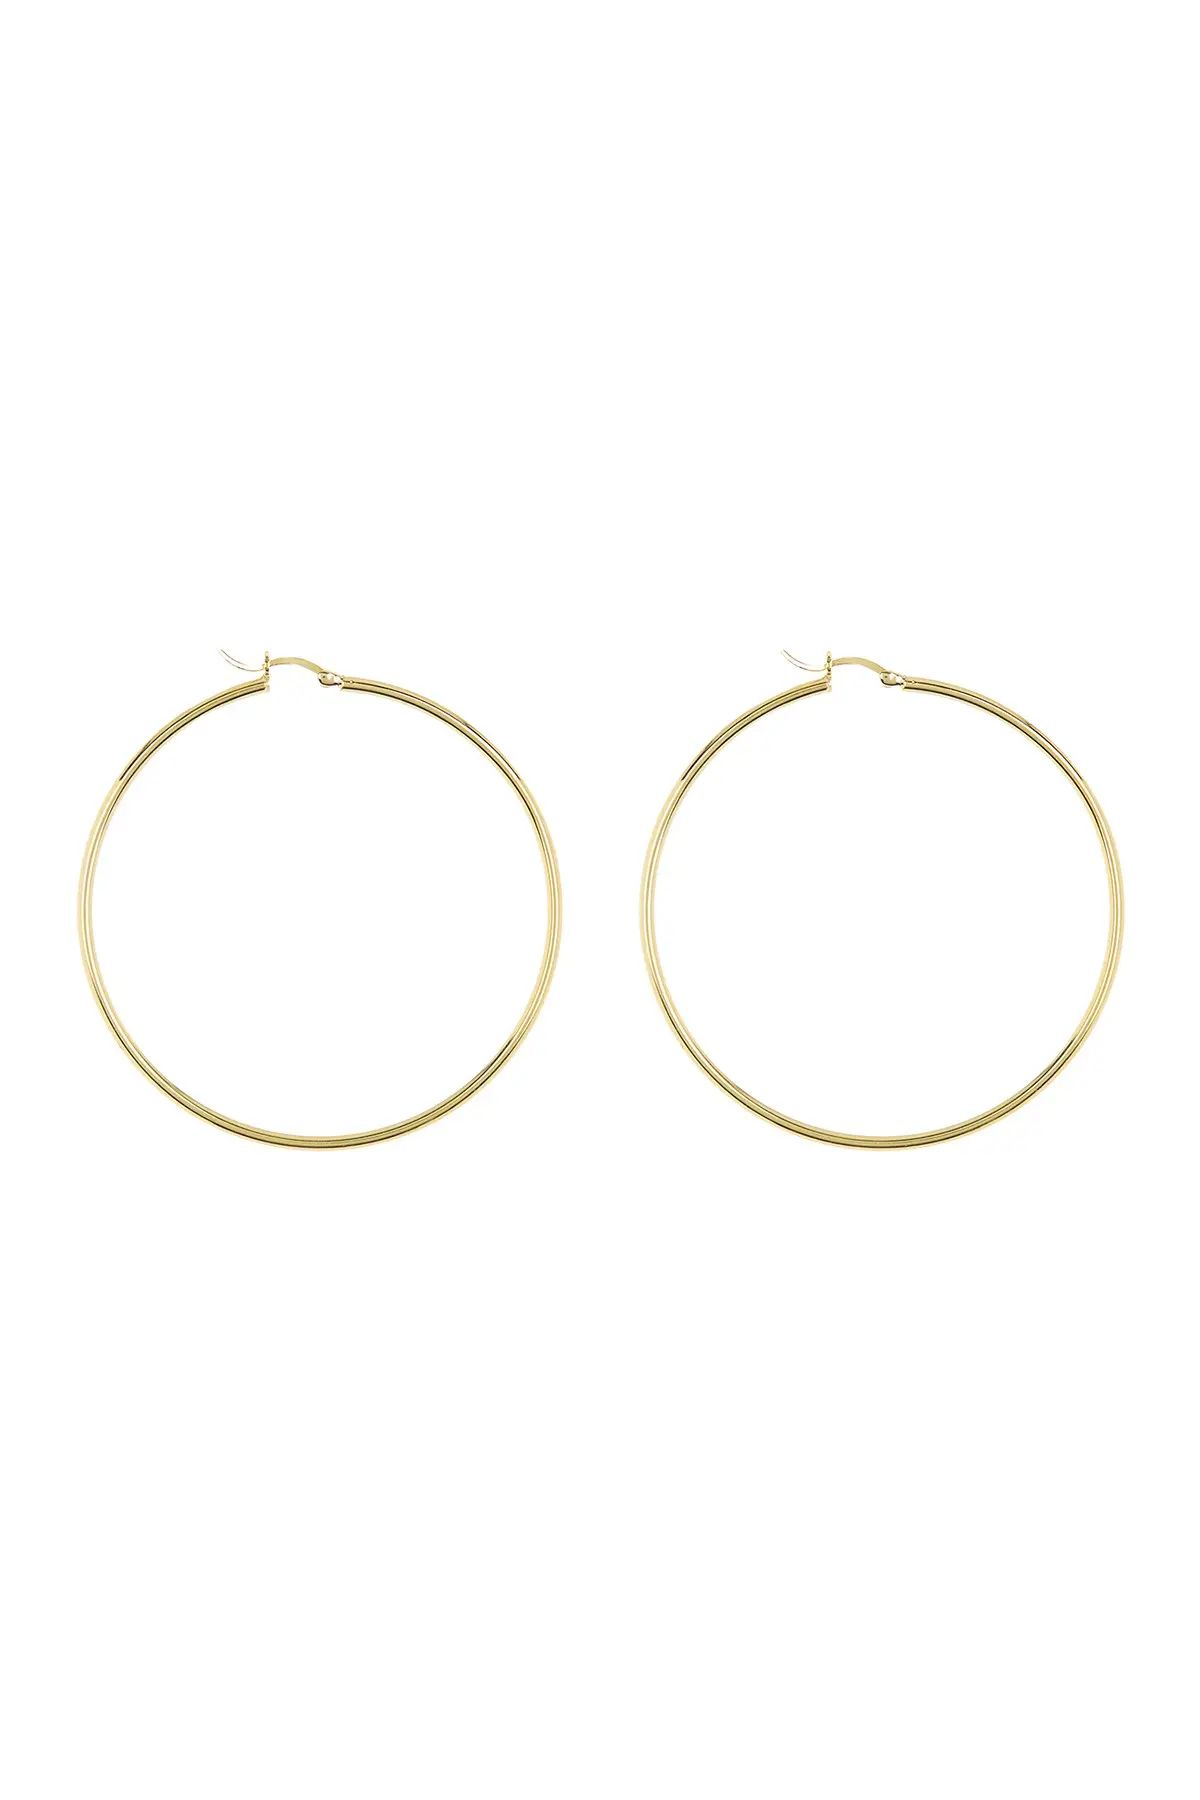 Savvy Cie | 18K Yellow Gold Vermeil 58mm Hoop Earrings | Nordstrom Rack | Nordstrom Rack